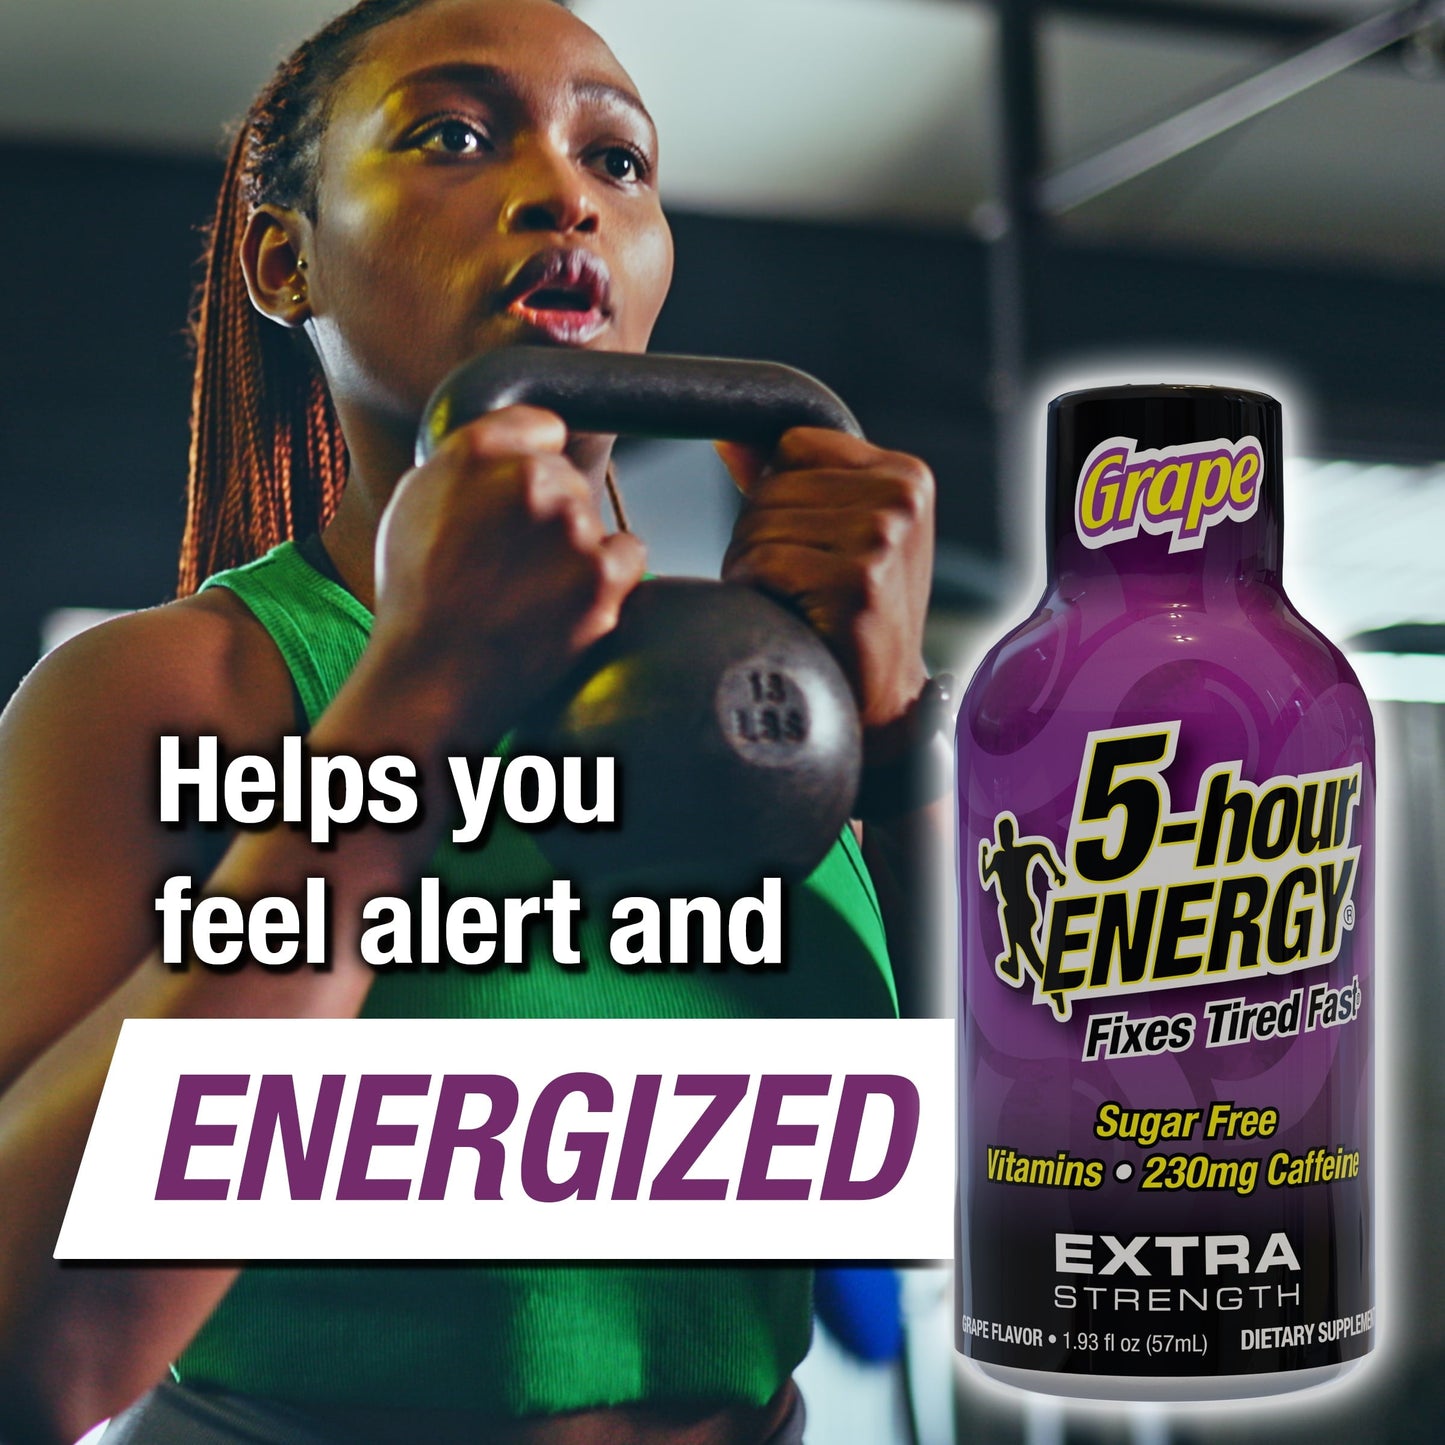 5-hour Energy Shot, Extra Strength, Grape